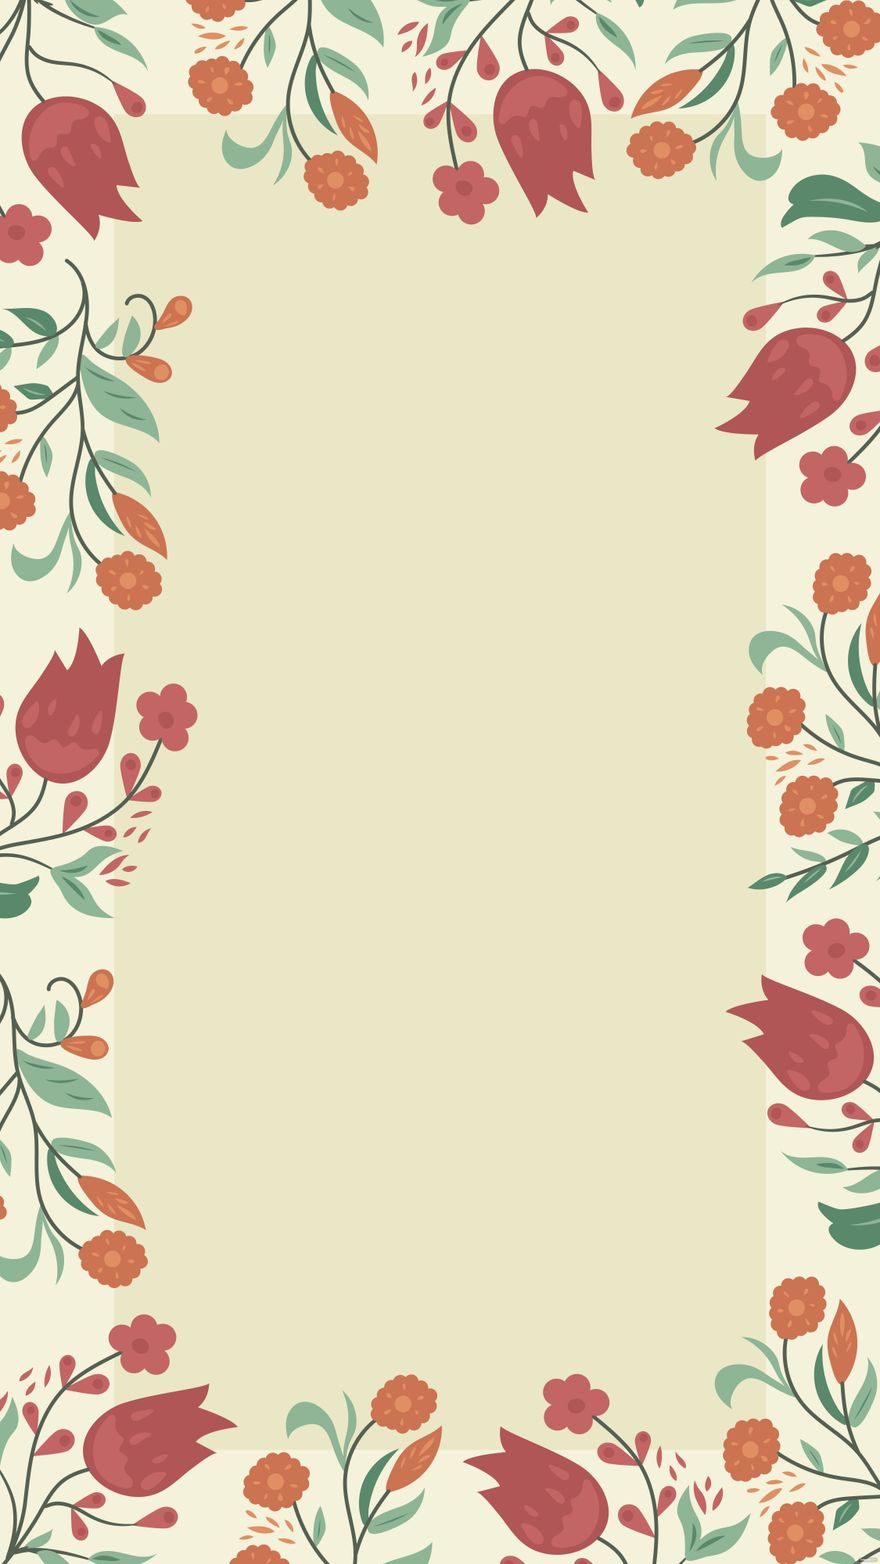 Free Vintage Floral Invitation Background - EPS, Illustrator, JPG, SVG |  